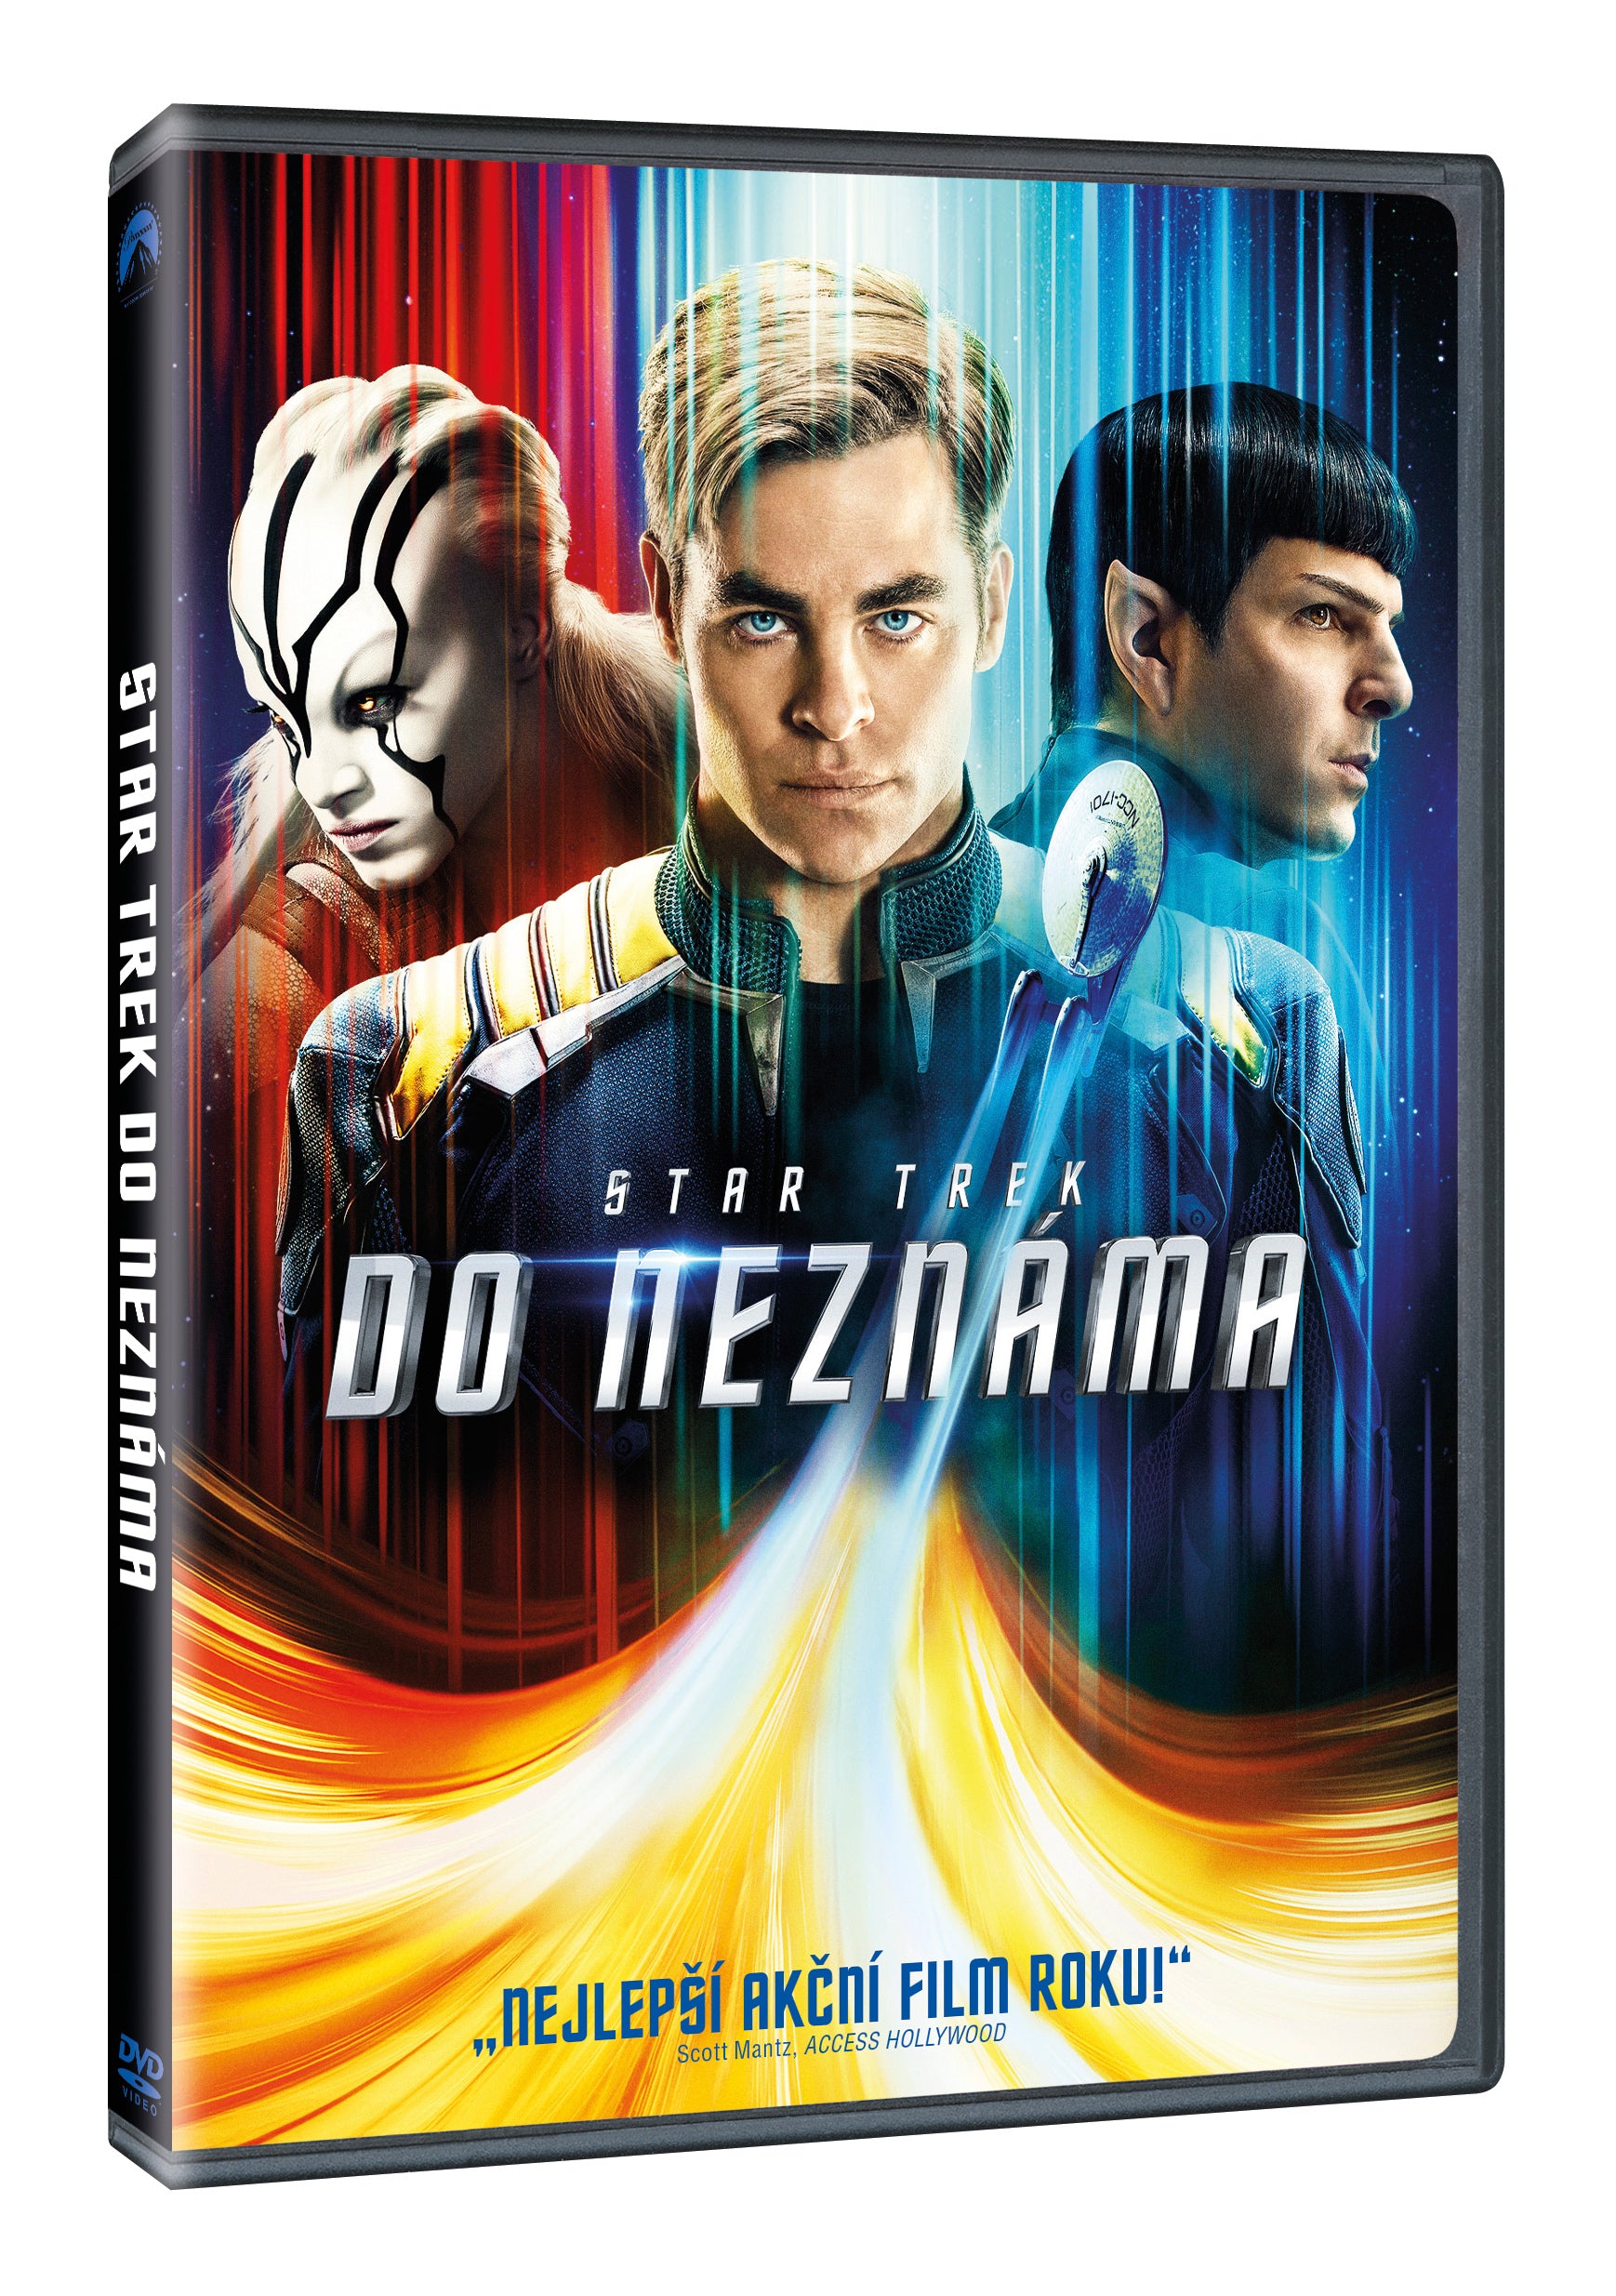 Star Trek: Do neznama DVD / Star Trek Beyond